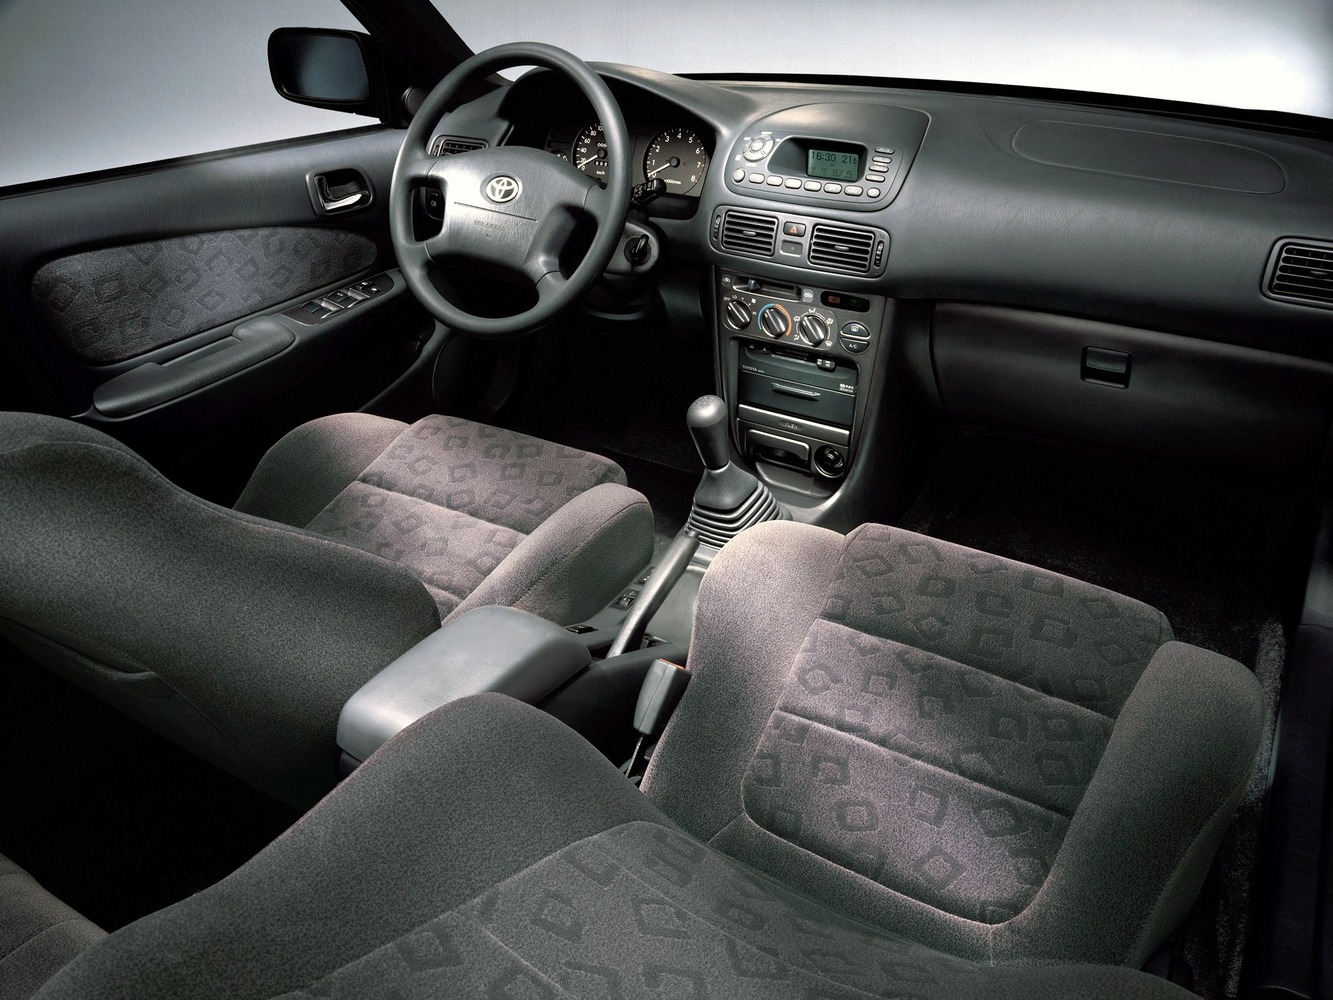 универсал Toyota Corolla 1999 - 2002г выпуска модификация 1.3 AT (85 л.с.)